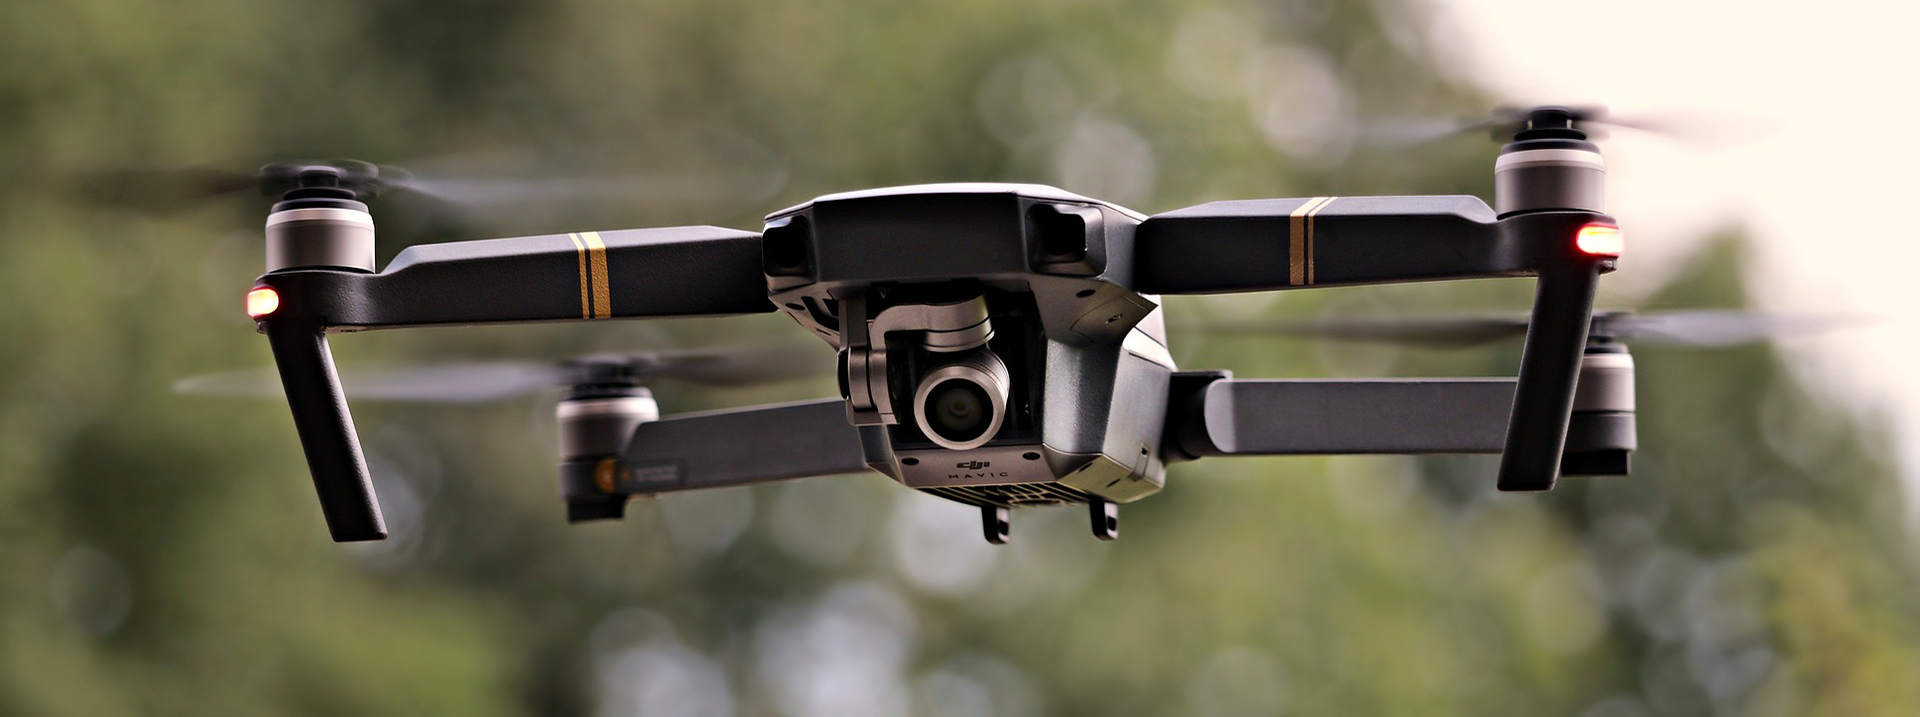 Национальный парк Тароко ужесточил правила использования дронов